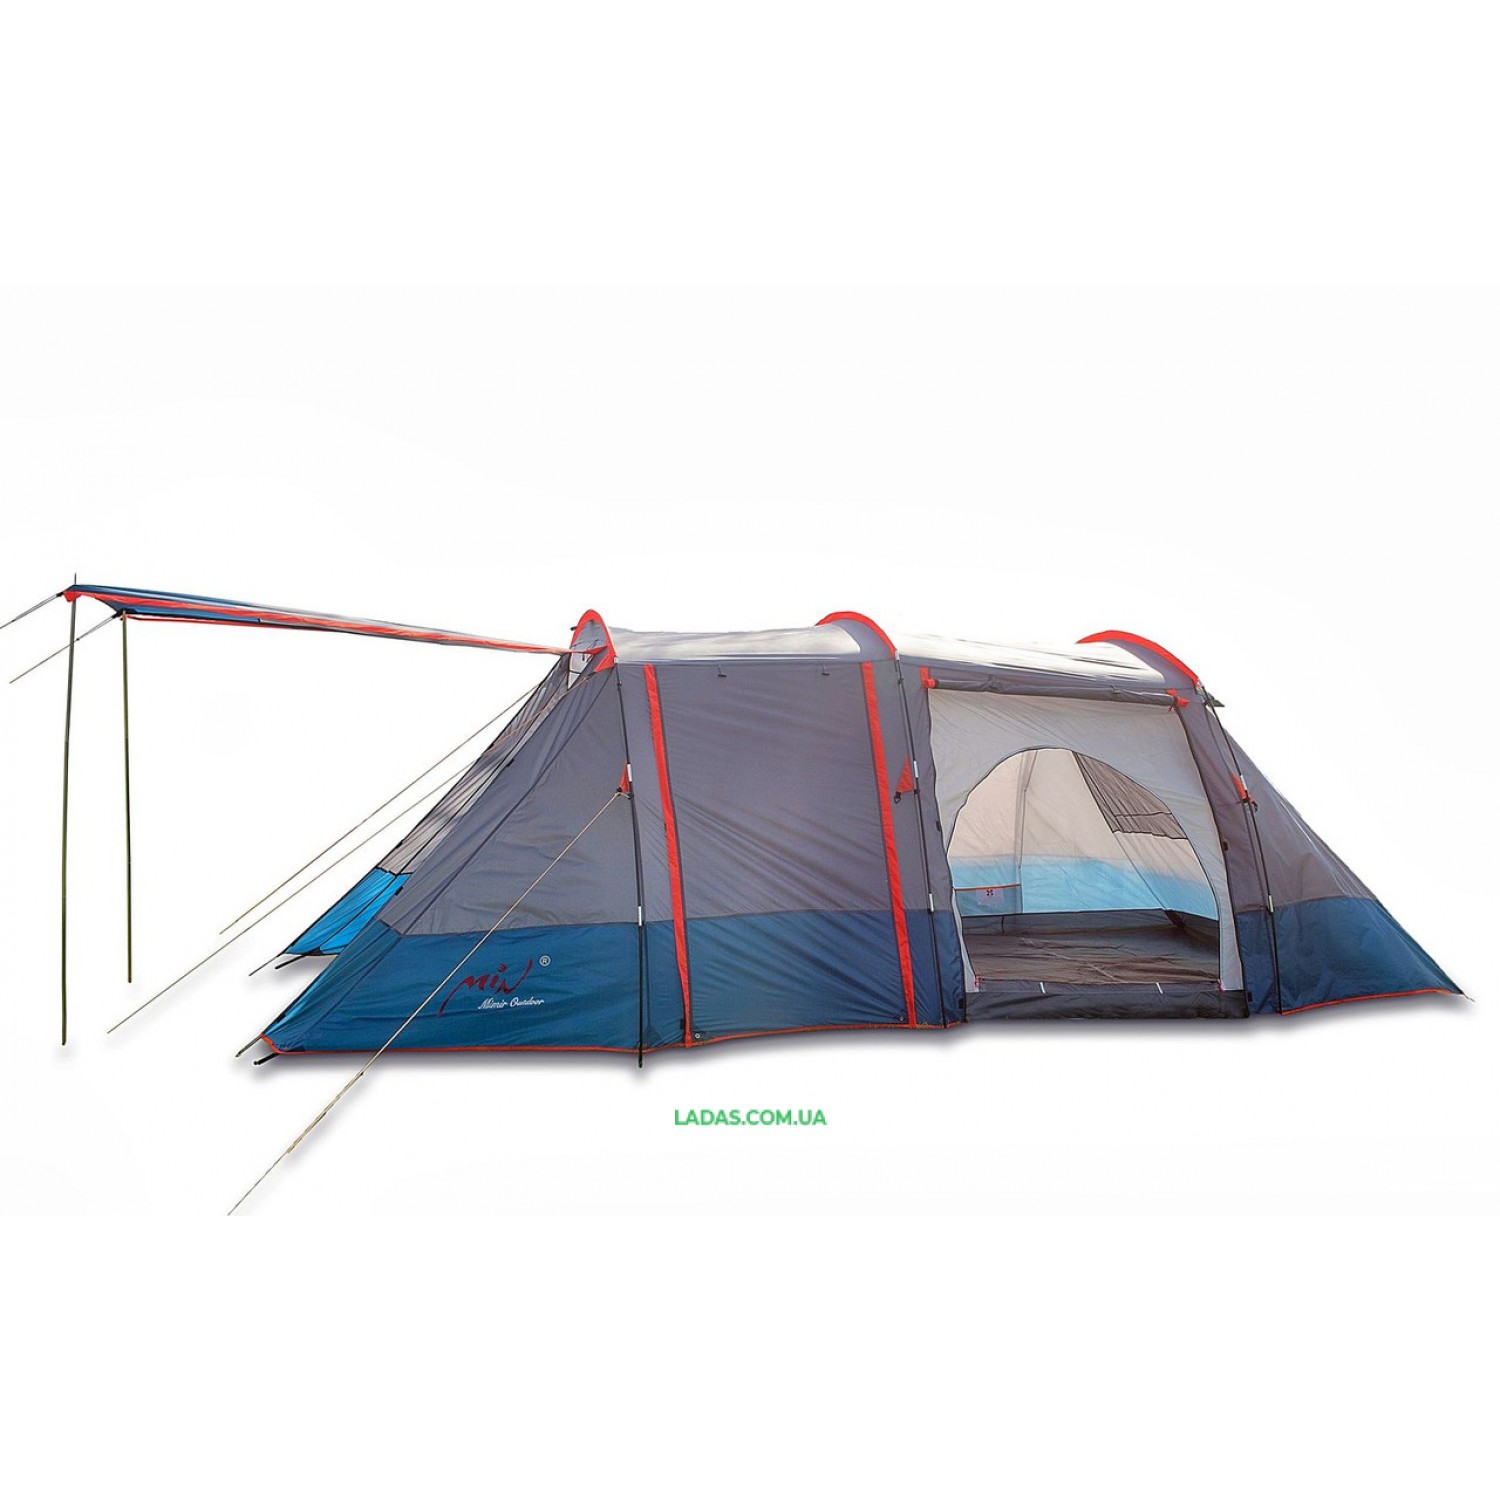 Пятиместная палатка Mimir Outdoor Х-1700